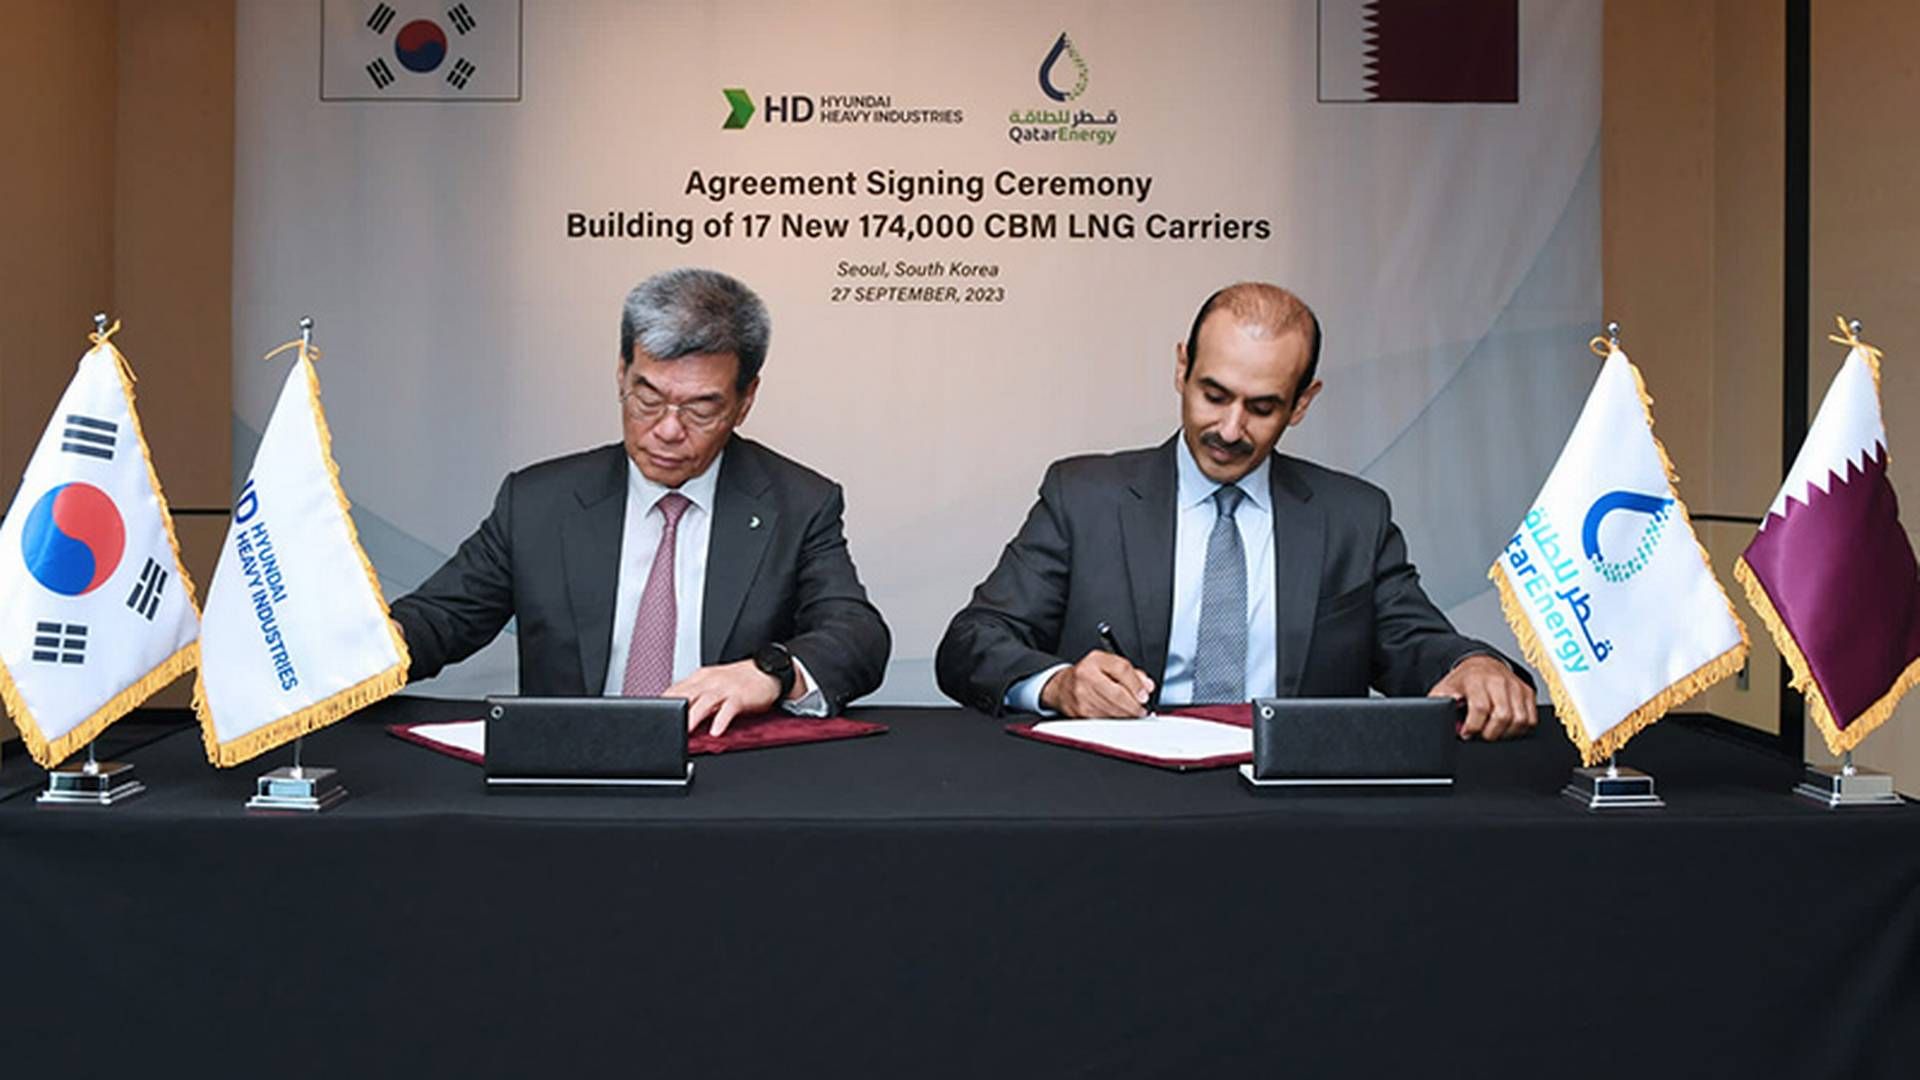 Aftalen mellem det sydkoreanske værft og Qatar Energy om købet af 17 LNG-skibe underskrives 27. september. | Foto: Qatarenergy